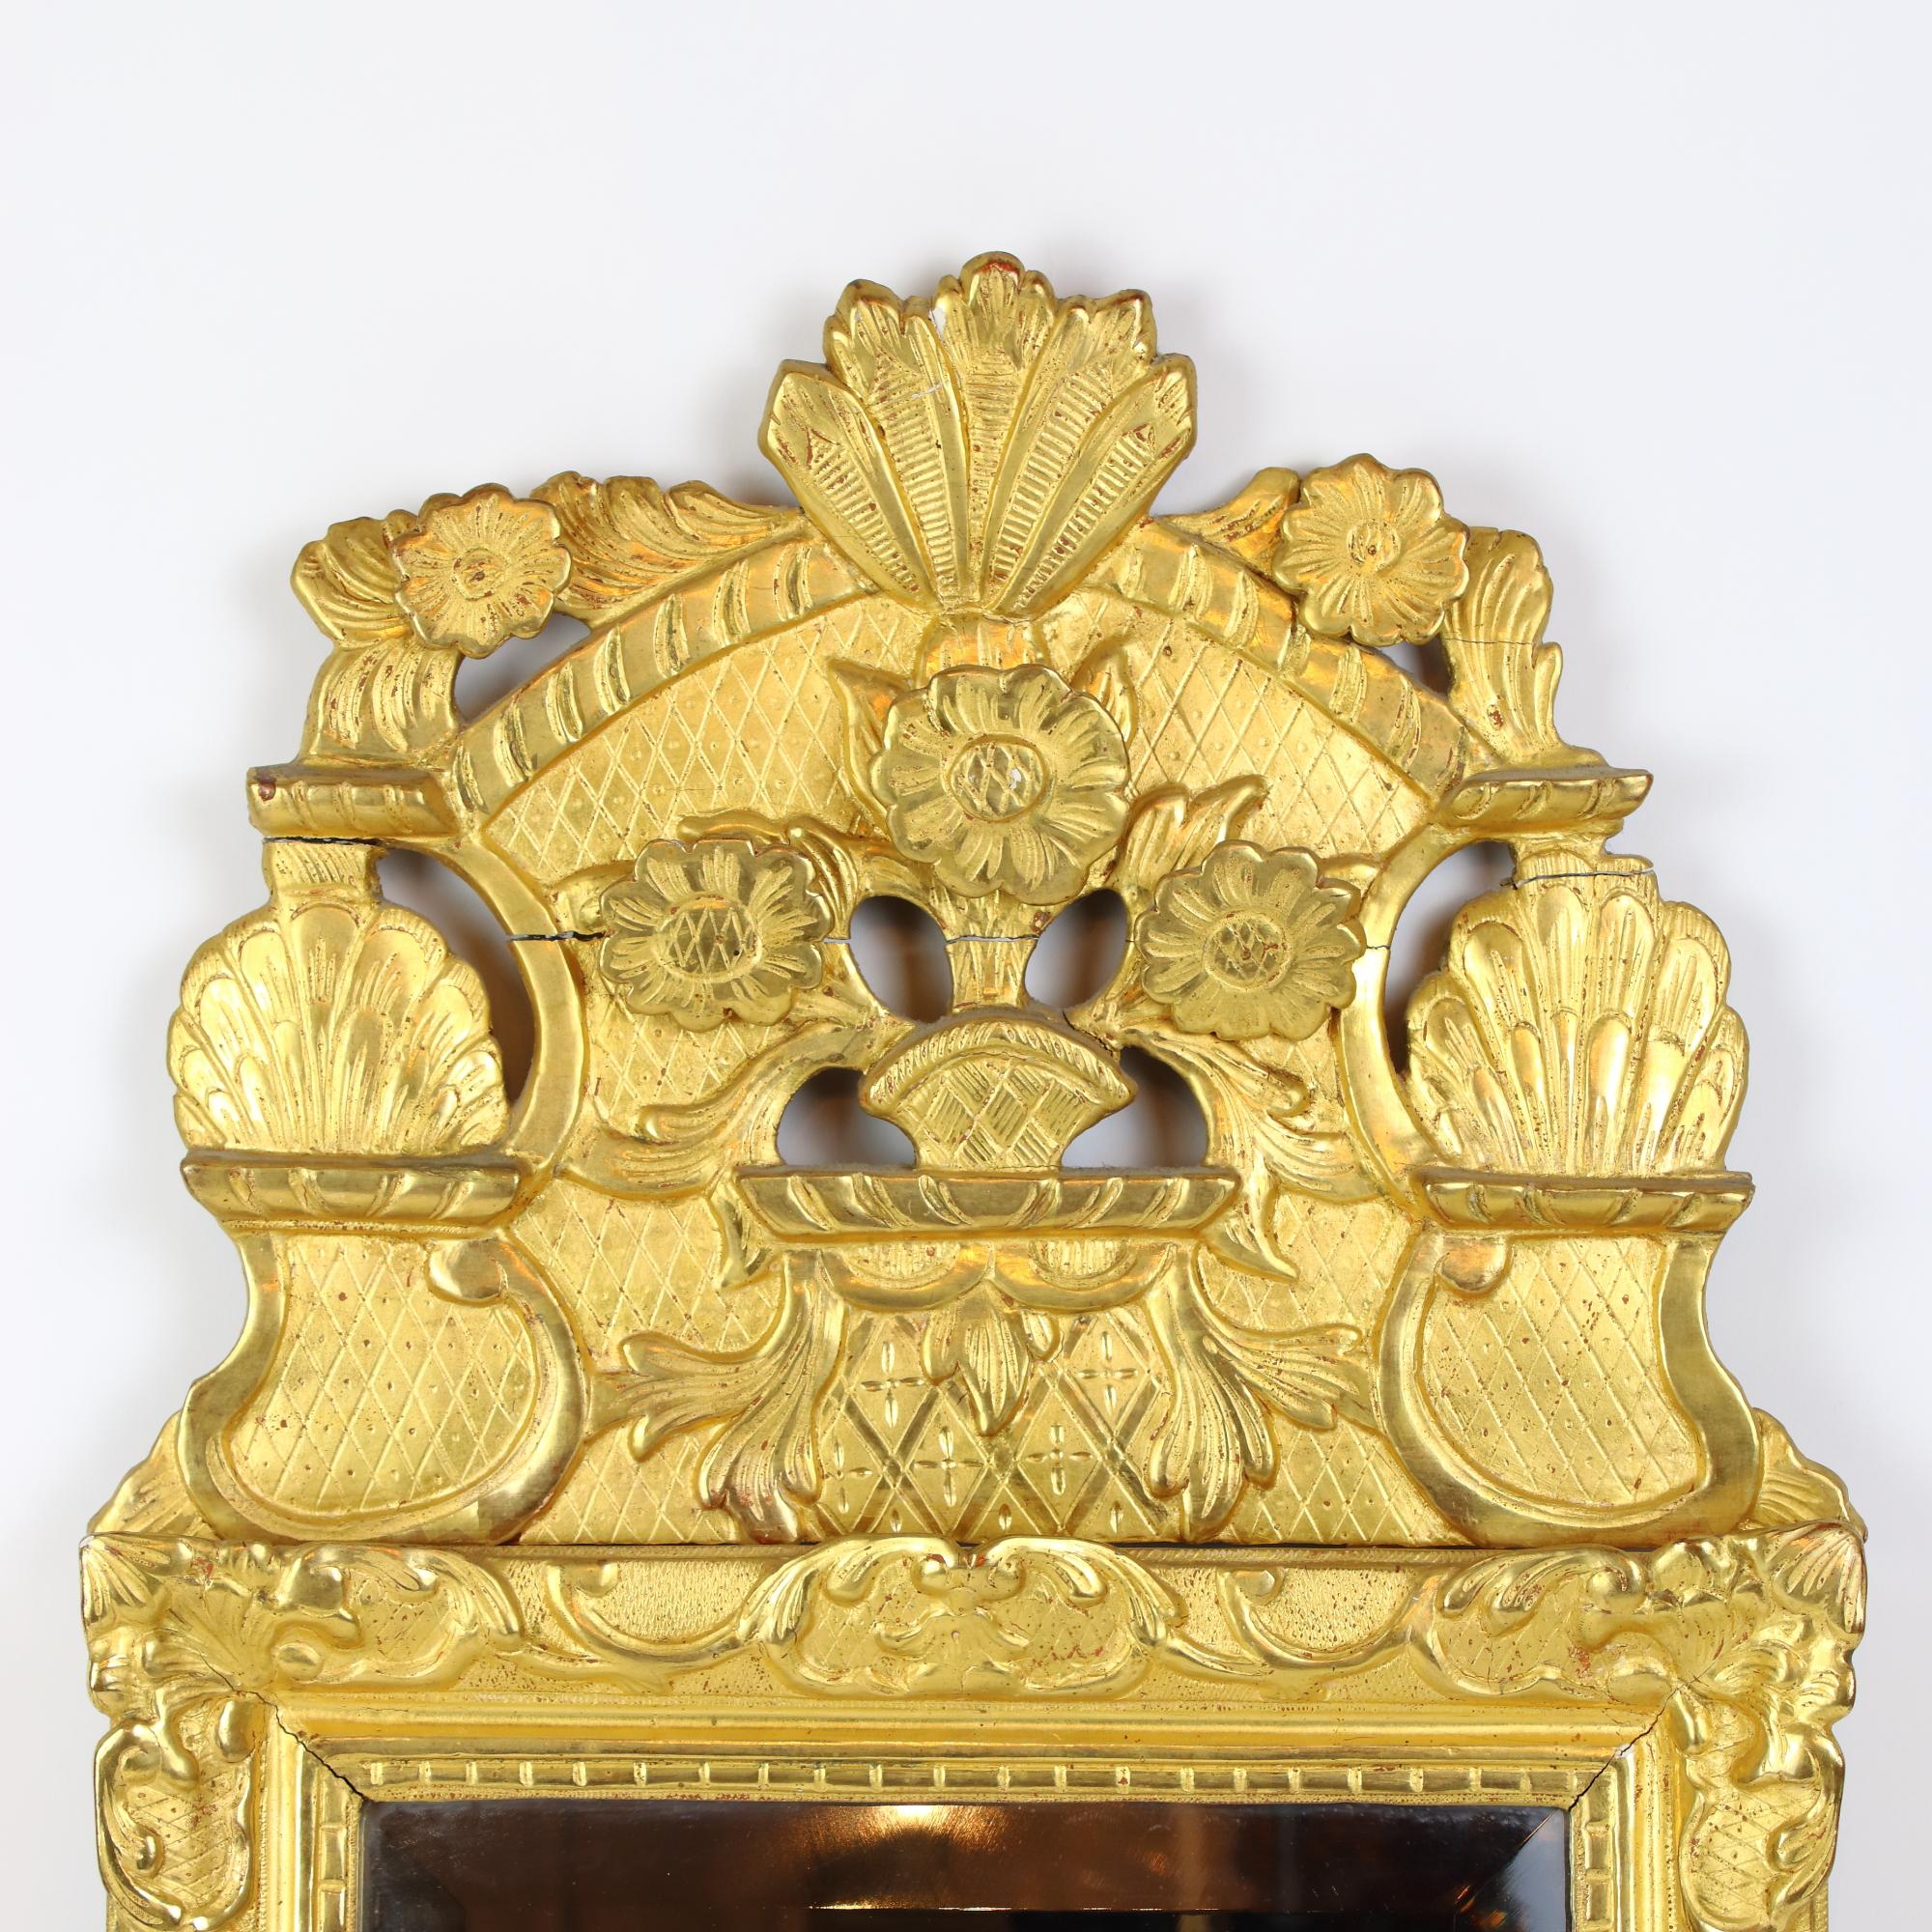 Frühes 18. Jahrhundert Französisch Régence Floral Giltwood Spiegel.

Frühe 18. Jahrhundert Regence Vergoldung Spiegel mit einem rechteckigen Spiegel Glas (13,88 in. x 11,02 in. / 33,5 cm x 28 cm) in einem Vergoldung Rahmen mit einem geschnitzten